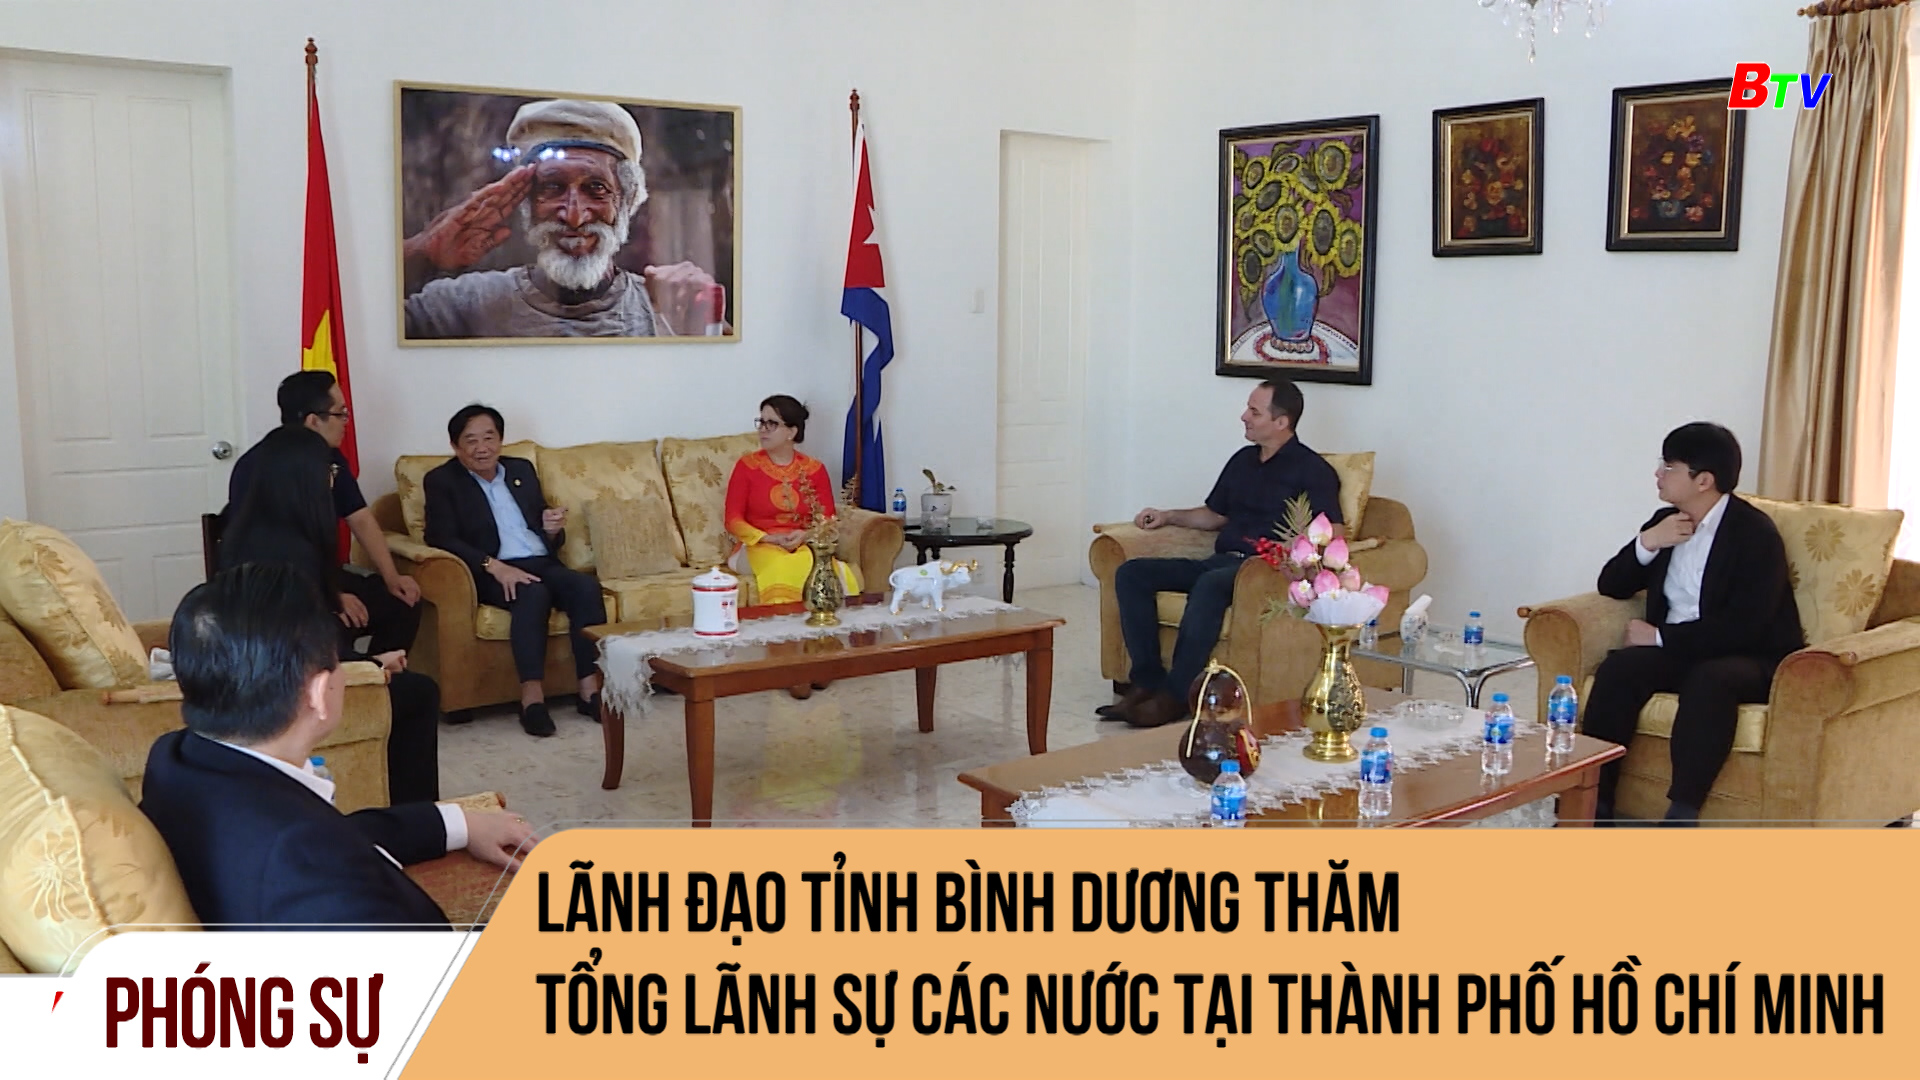 Lãnh đạo tỉnh Bình Dương thăm Tổng Lãnh sự các nước tại thành phố Hồ Chí Minh	